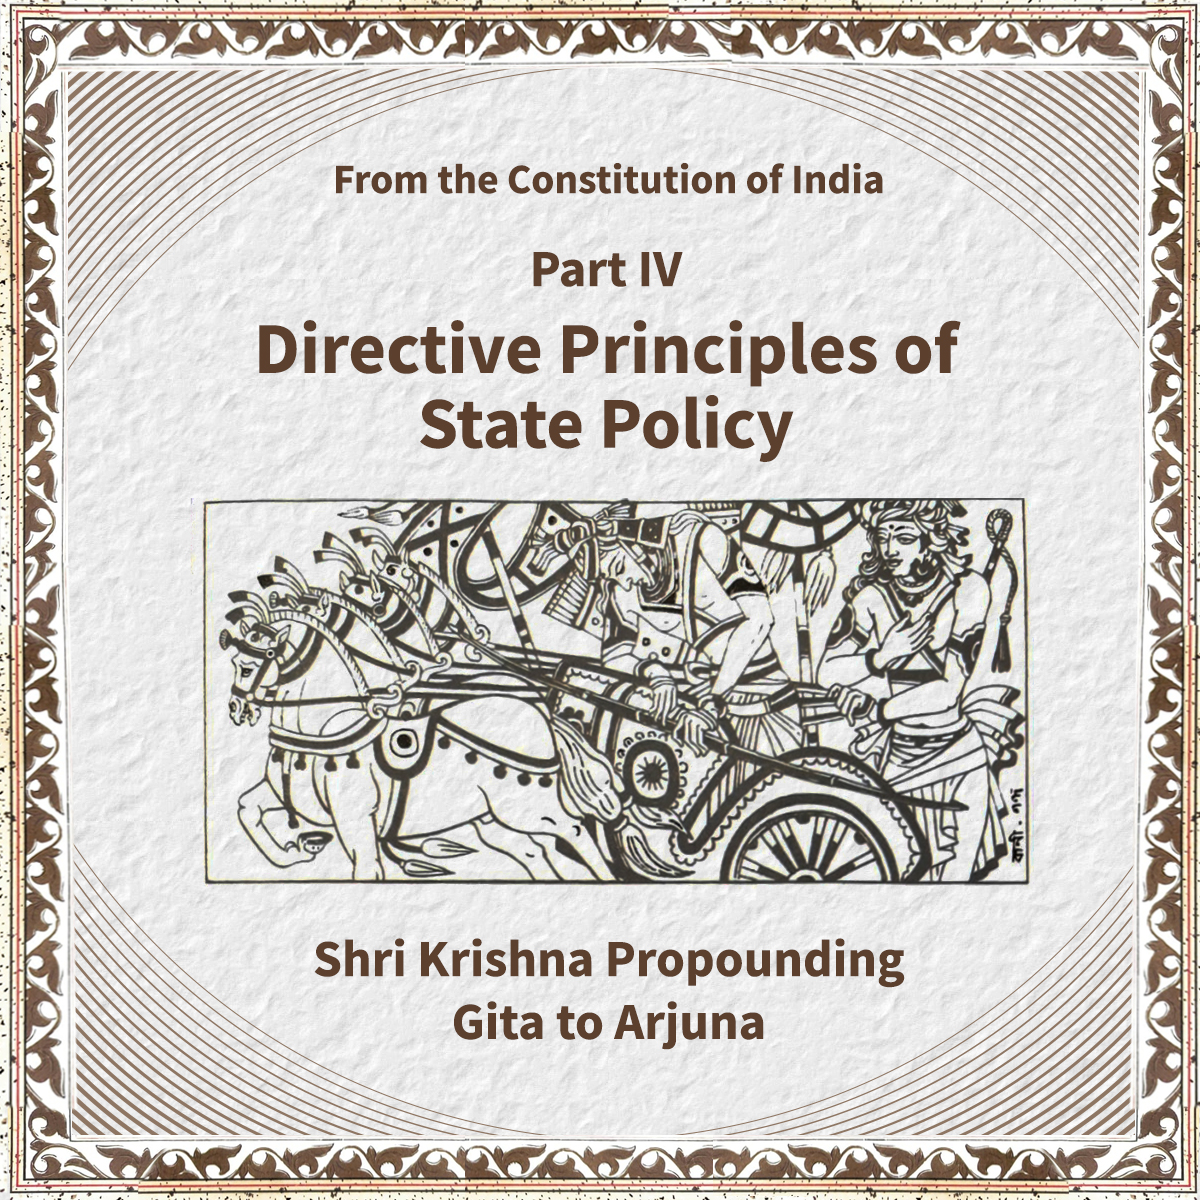 Chapter on Directive Principles of State Policy has the image of Lord Krishna propounding Gita to Arjun. संविधान के चौथे अध्याय पर भगवन श्री कृष्ण द्वारा अर्जुन को गीता का उपदेश देने का चित्र है। 4/17 #SamvidhanDiwas